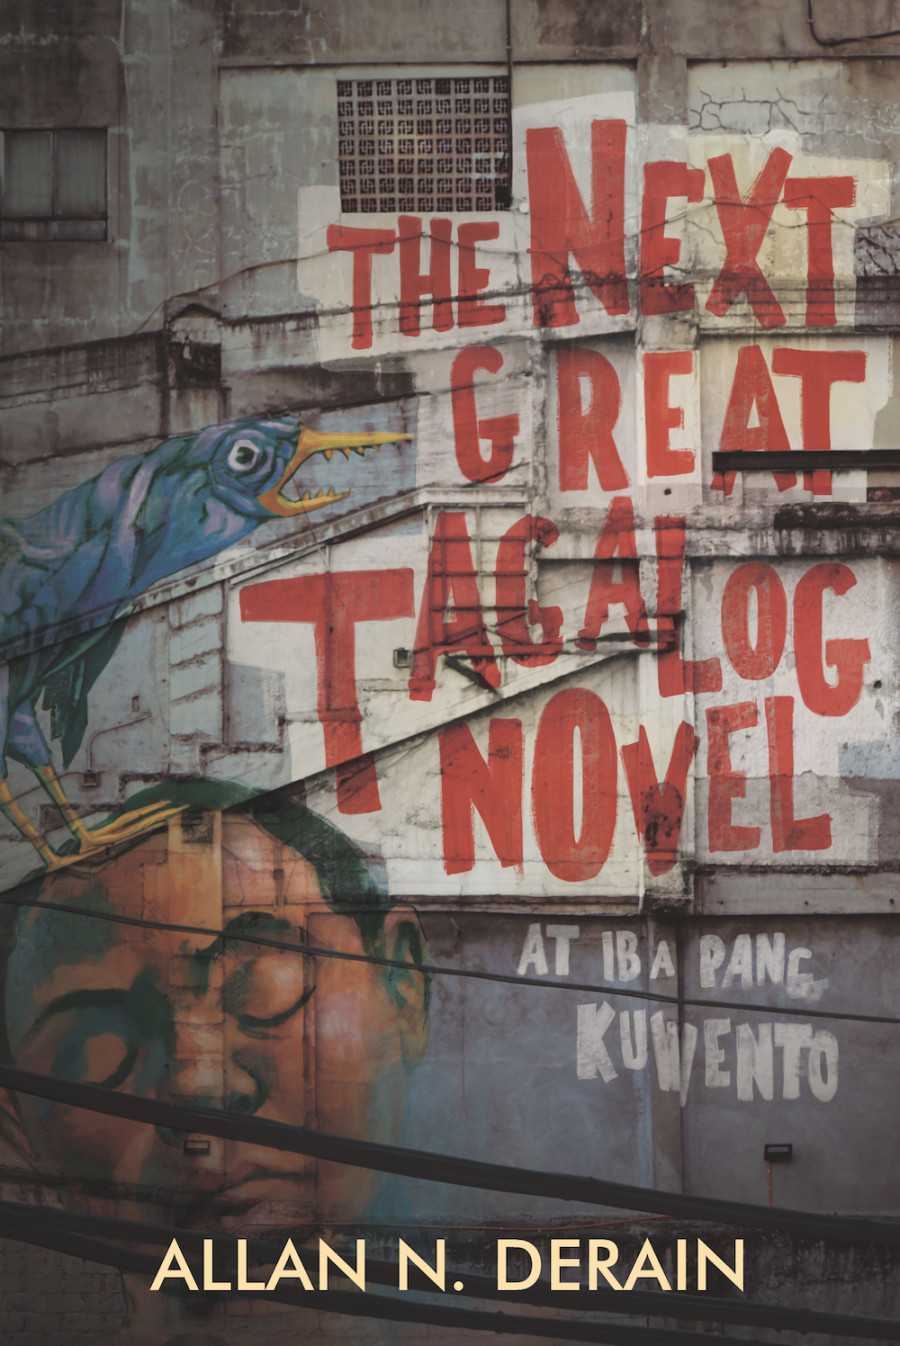 The next great tagalog novel, at iba pang kuwento